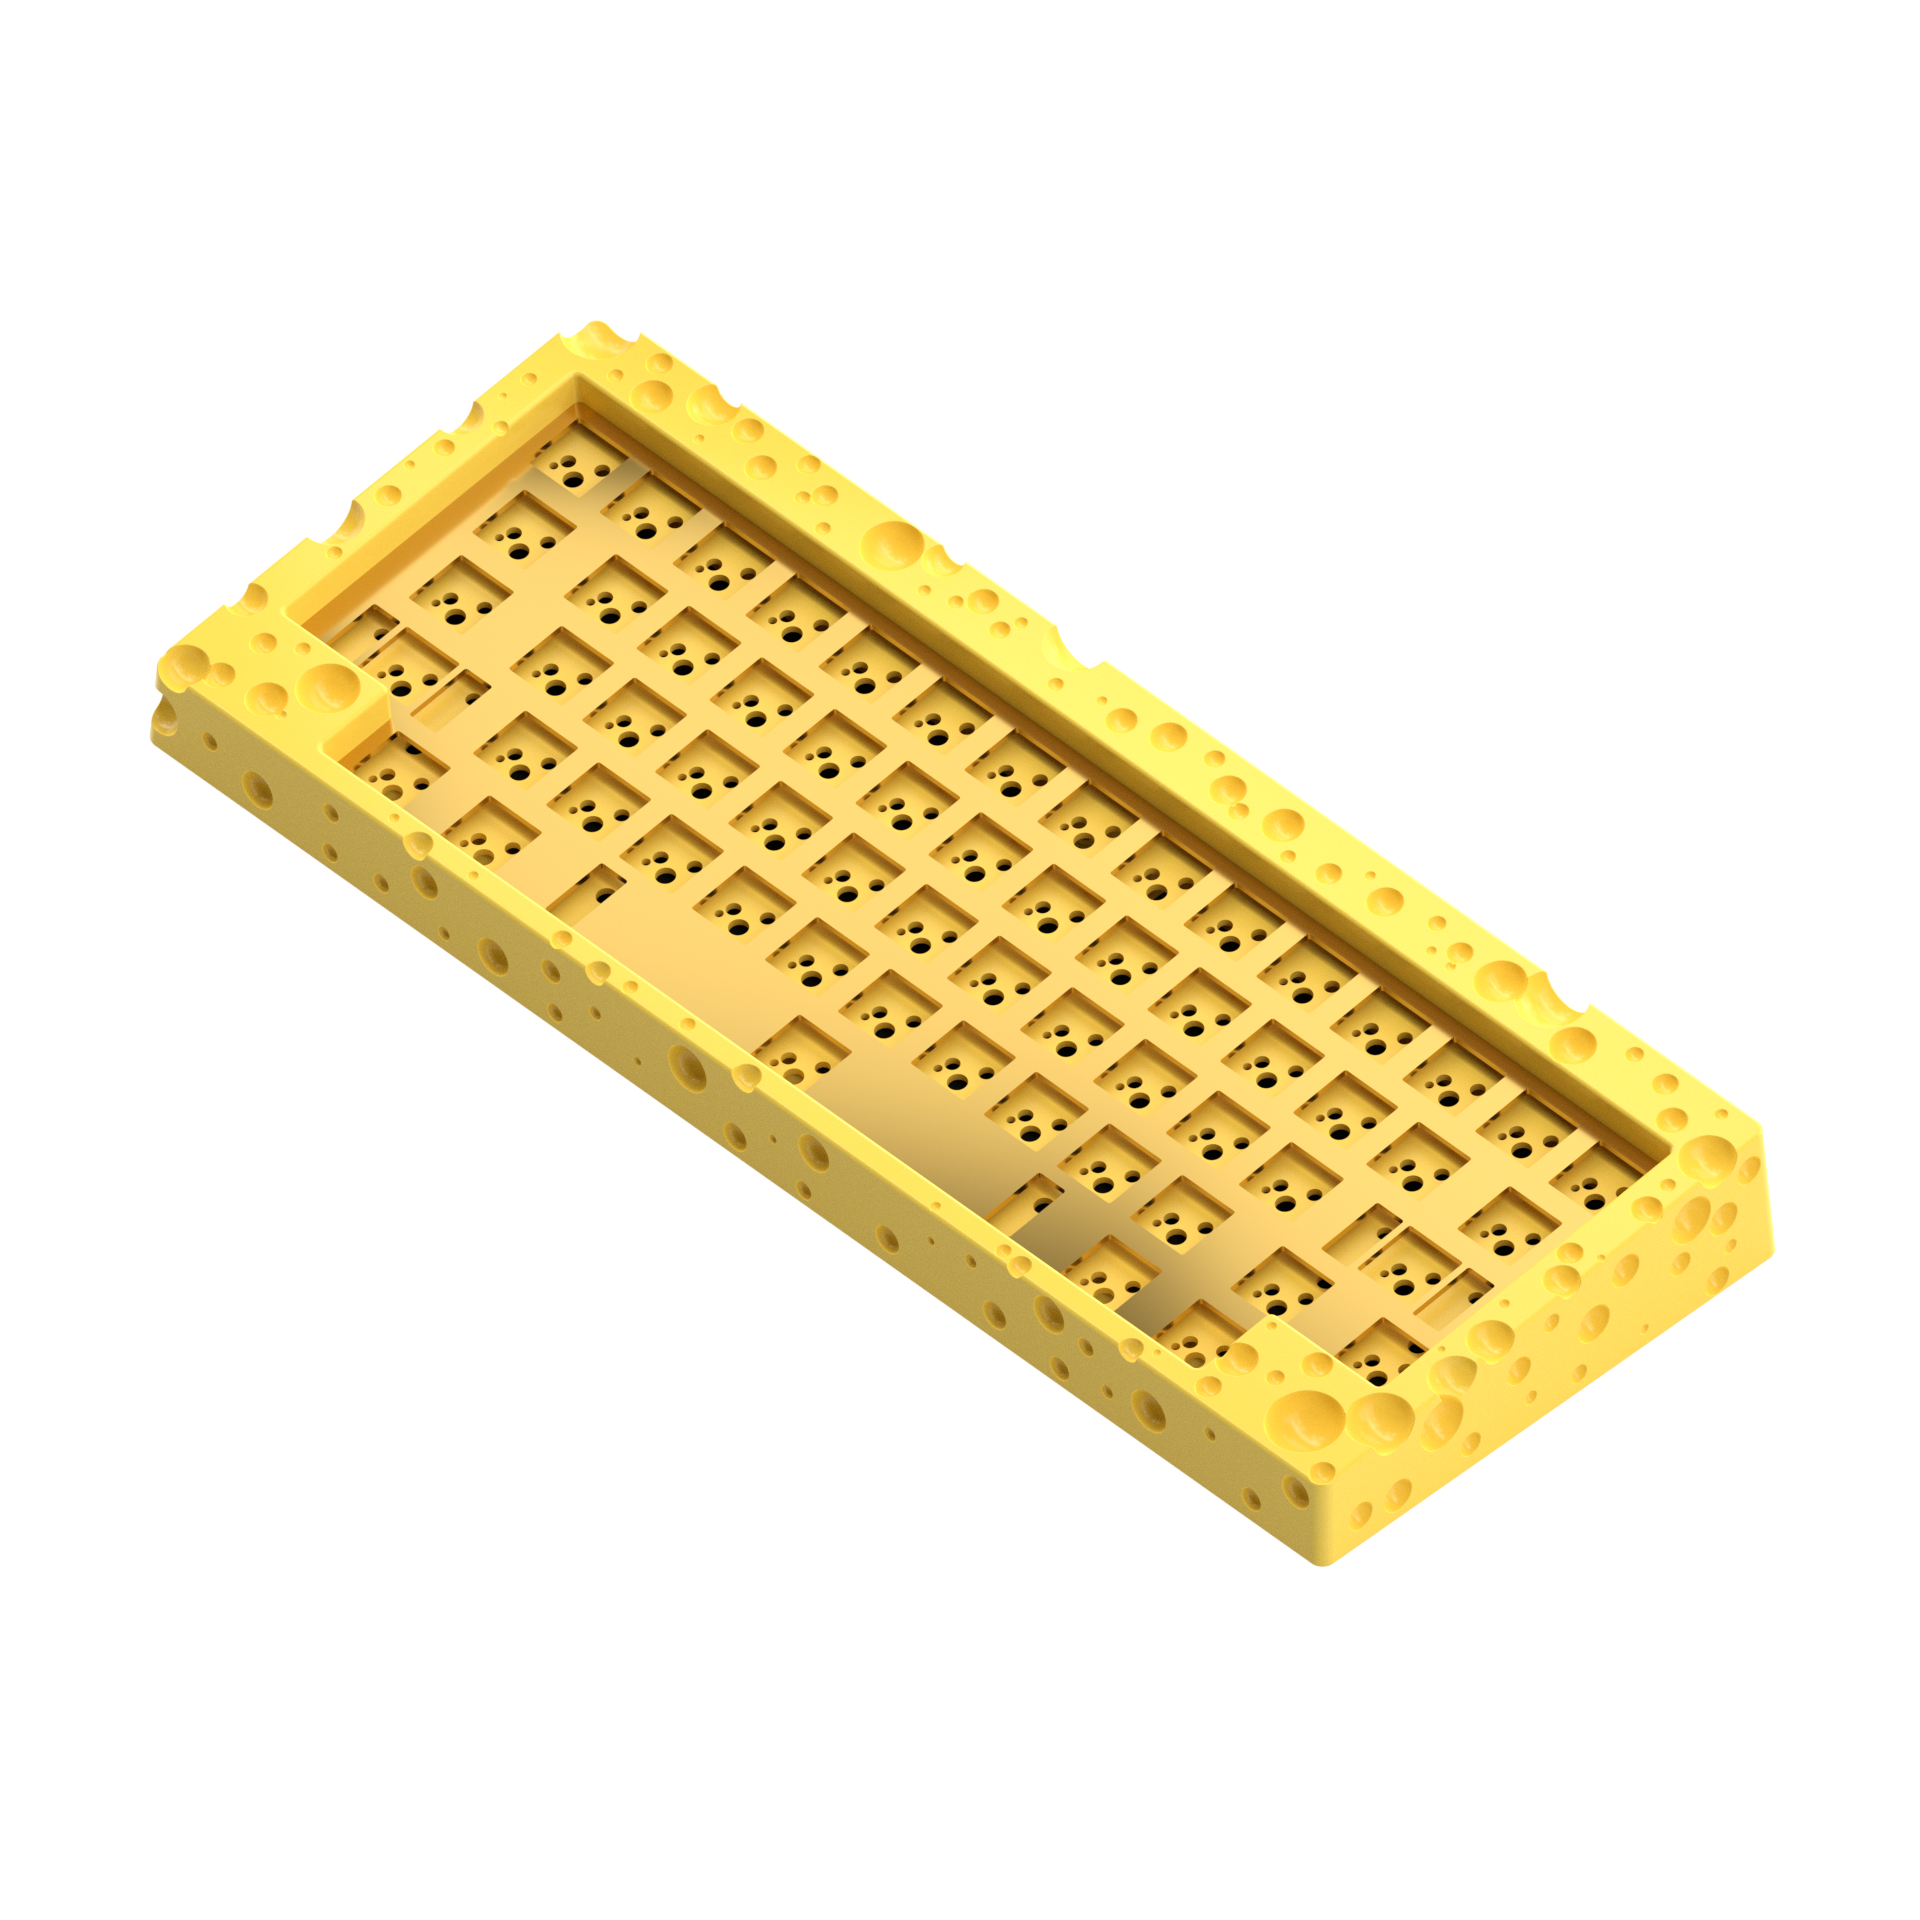 [Group Buy] SWISS aka. the Cheeseboard Custom Mechanical Keyboard Kit